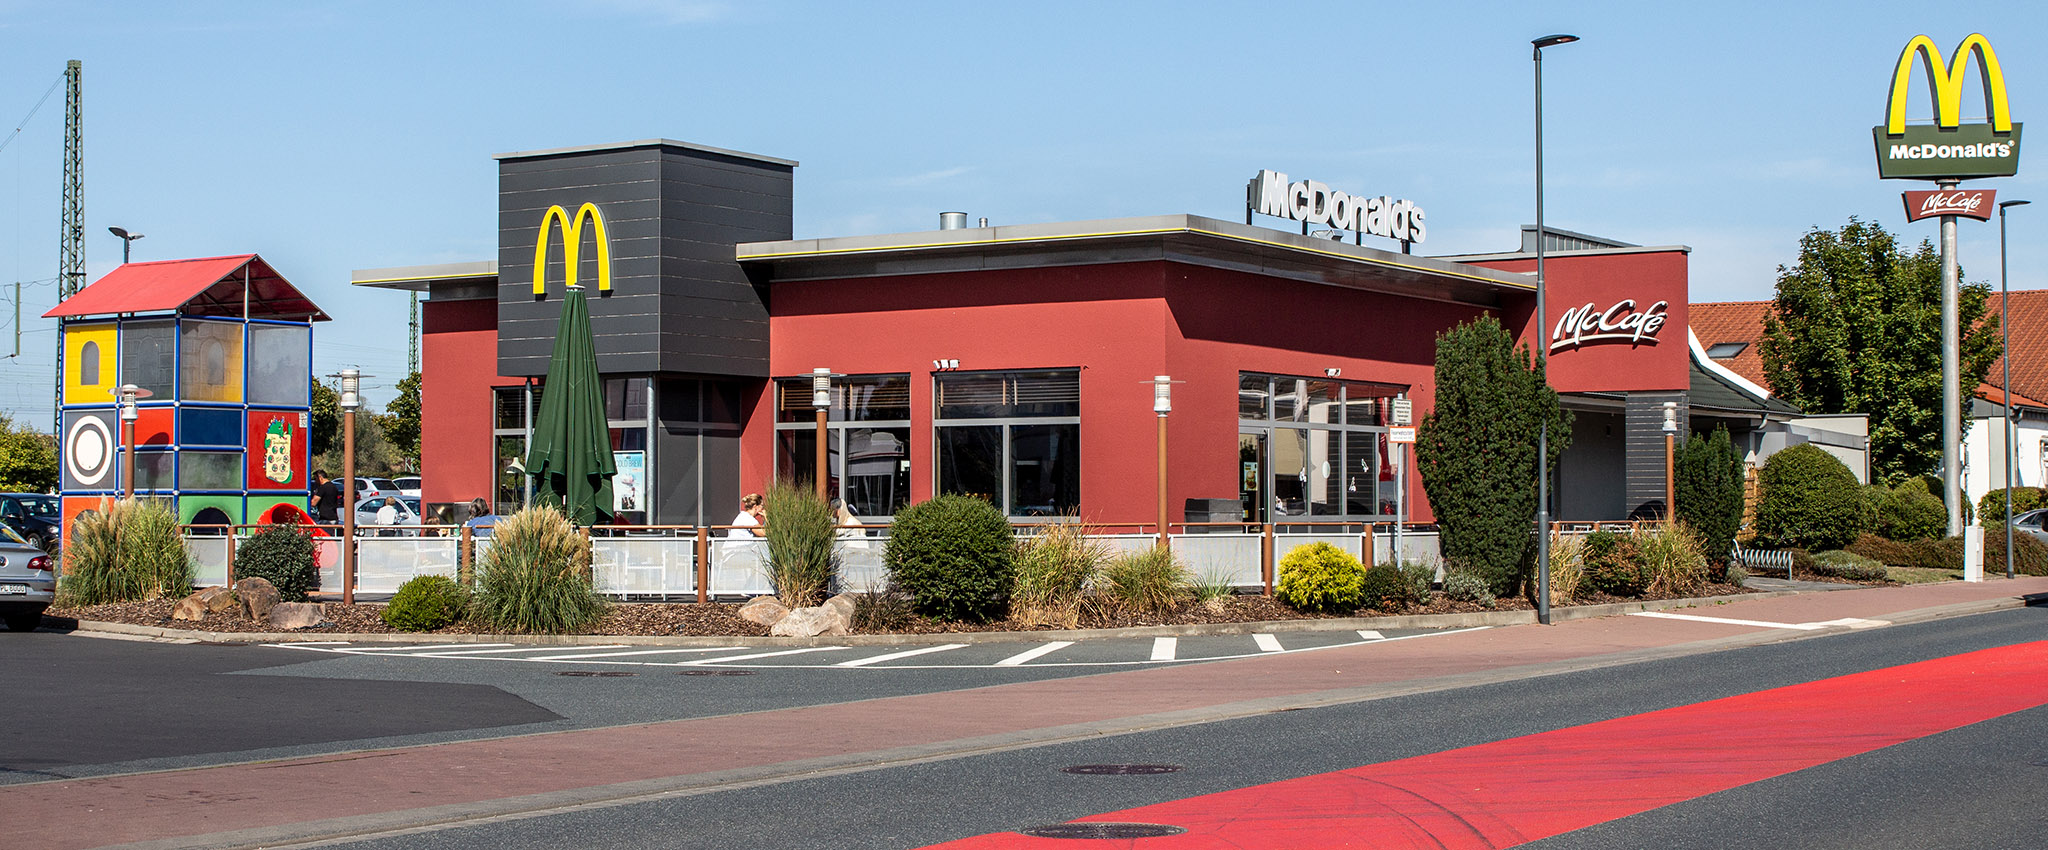 Das McDonald’s-Restaurant in Bad Vilbel